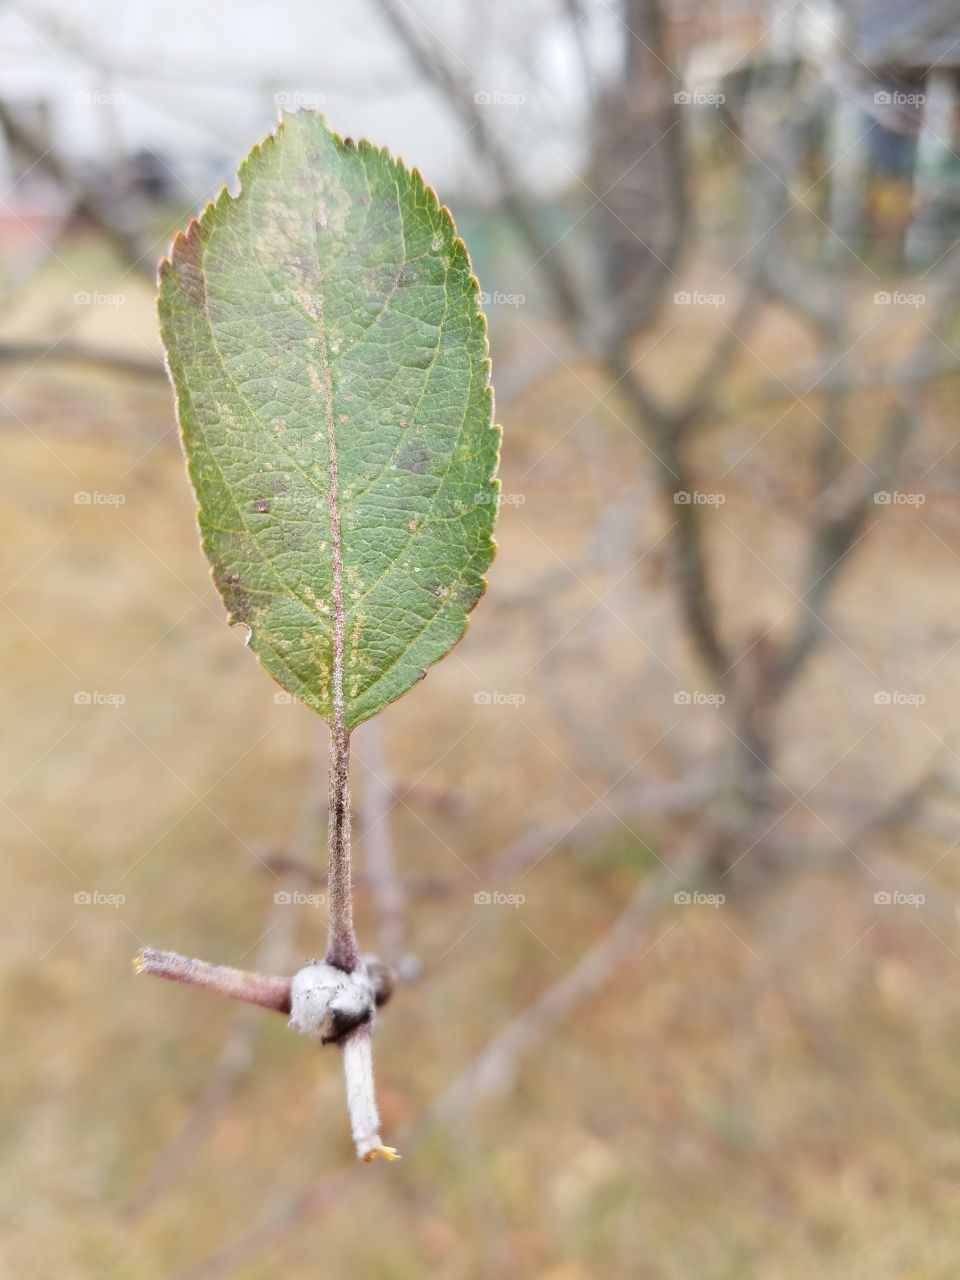 Leaf on a branch